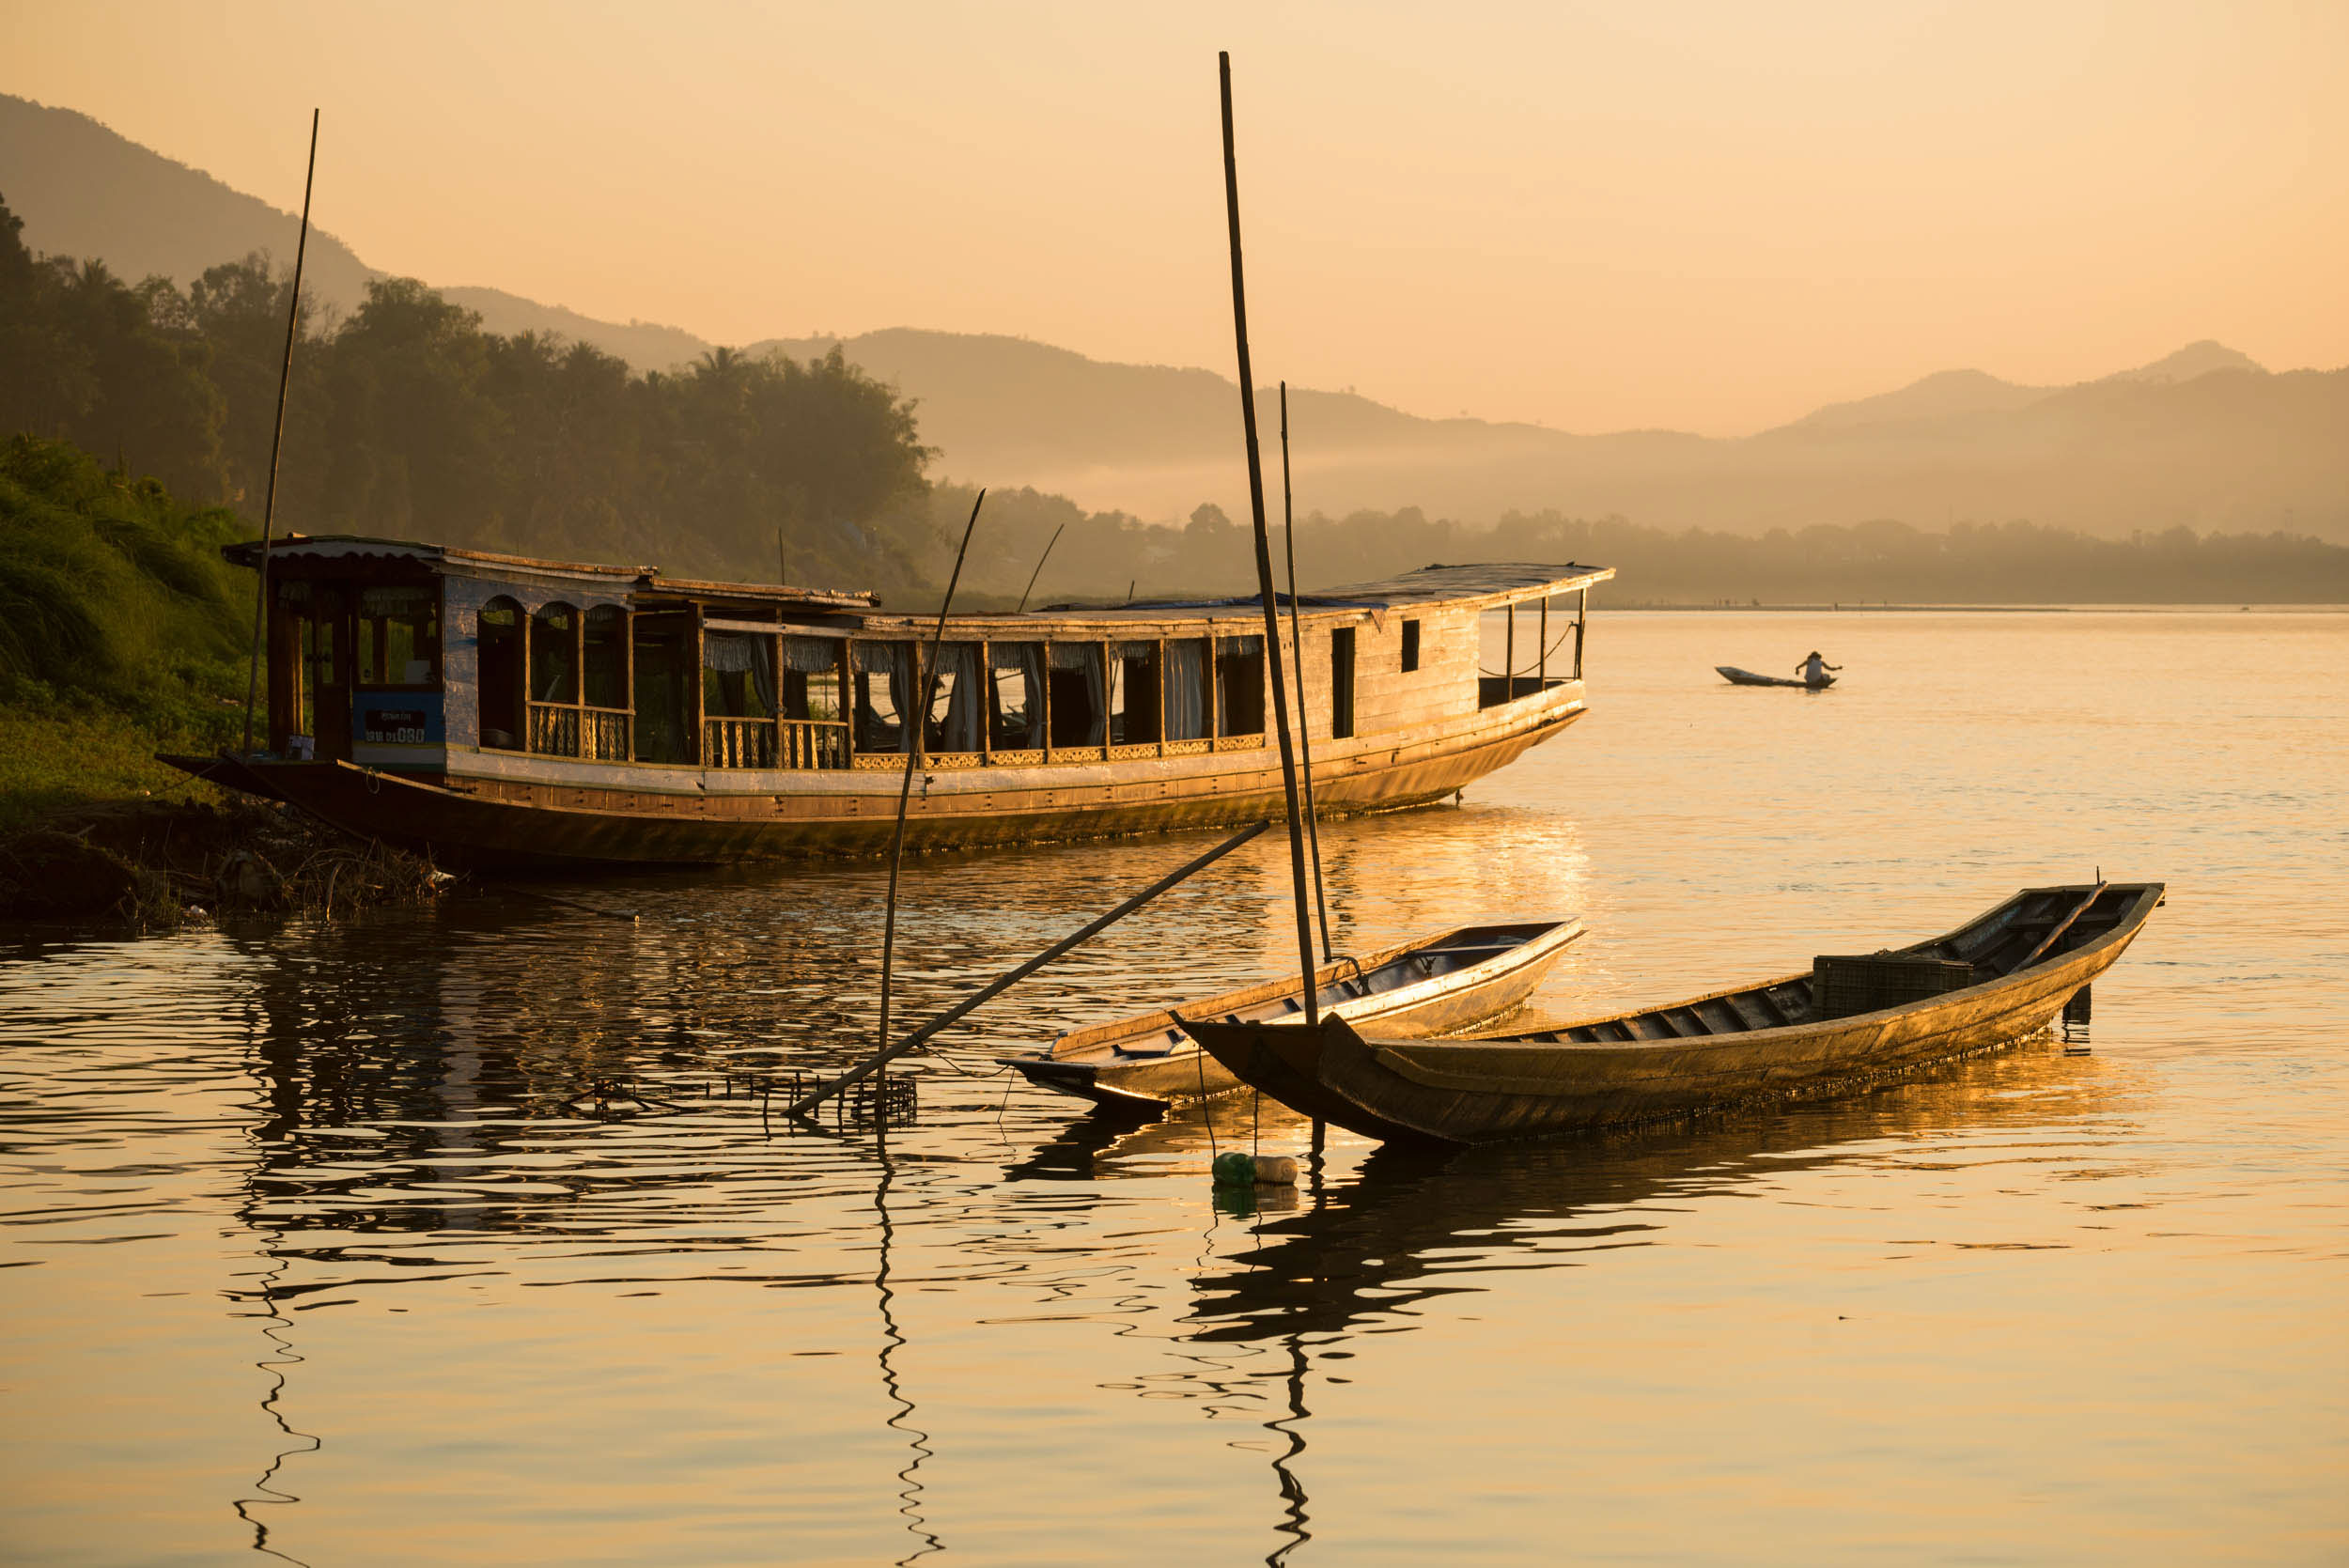 boat-lake-sunset-travel-luang-prabang-laos-asia